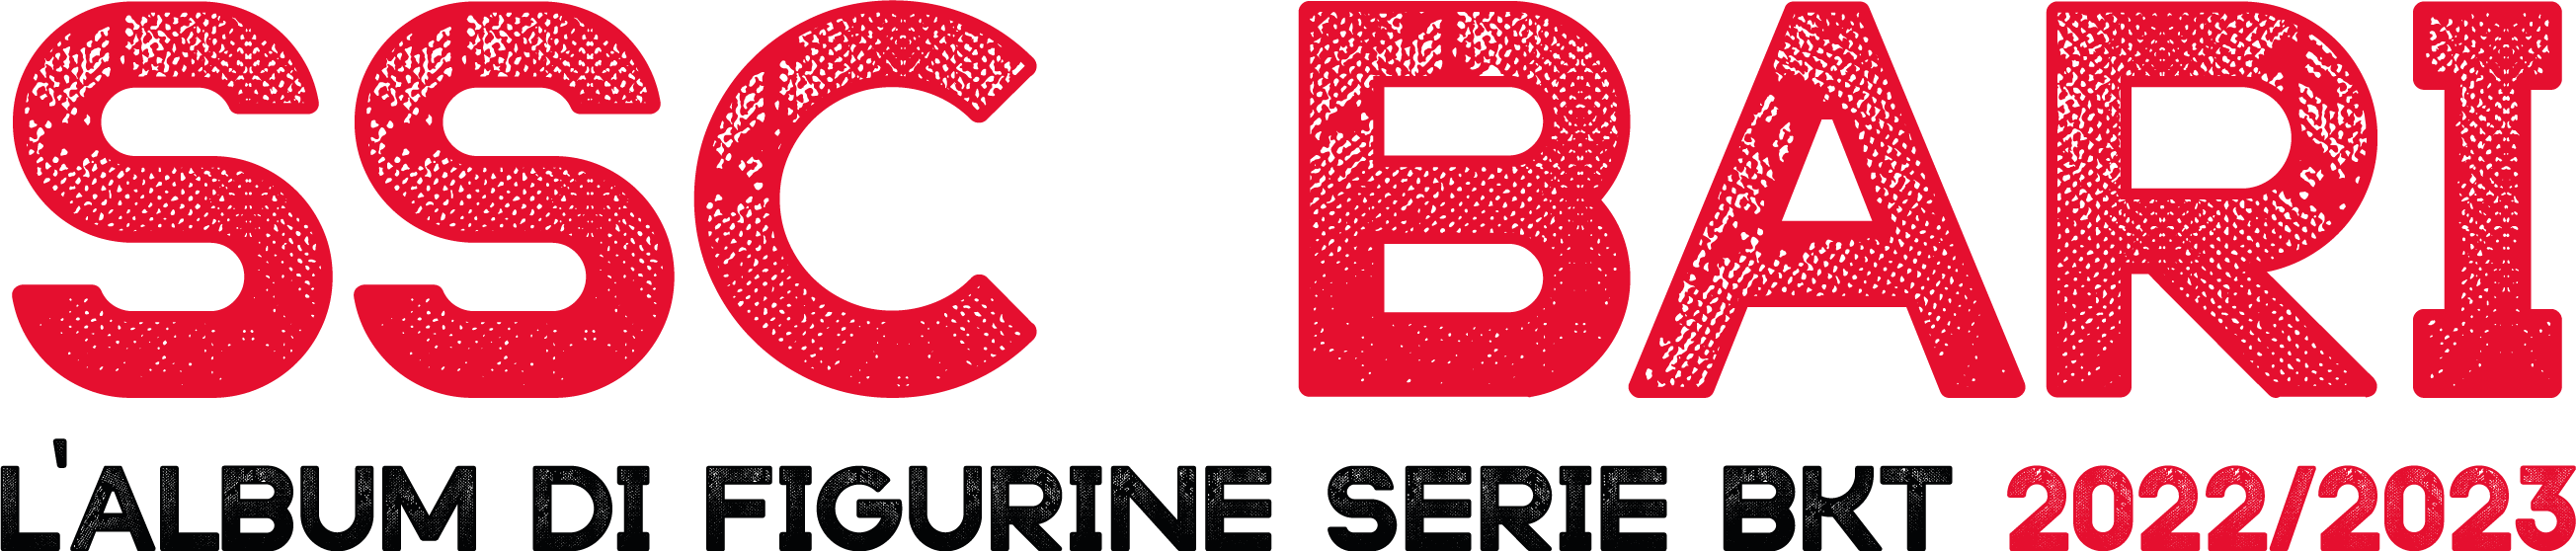 SSC BARI – L'ALBUM DI FIGURINE SERIE BKT 2022/2023